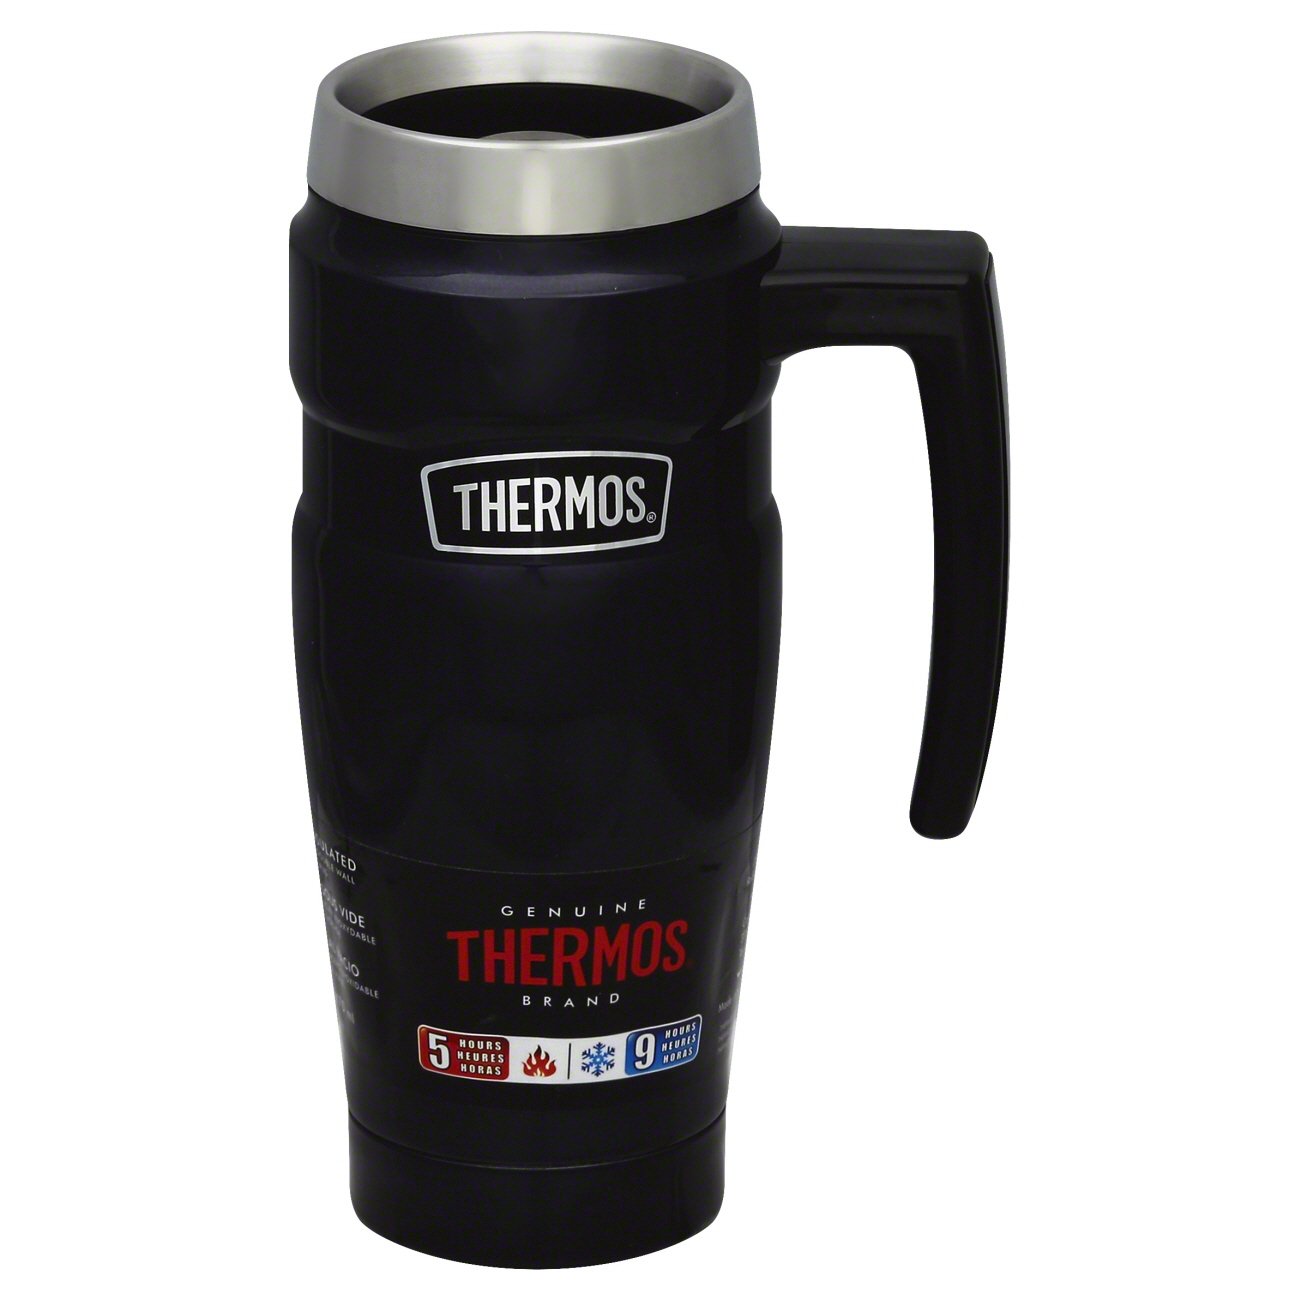 thermos brand coffee thermos